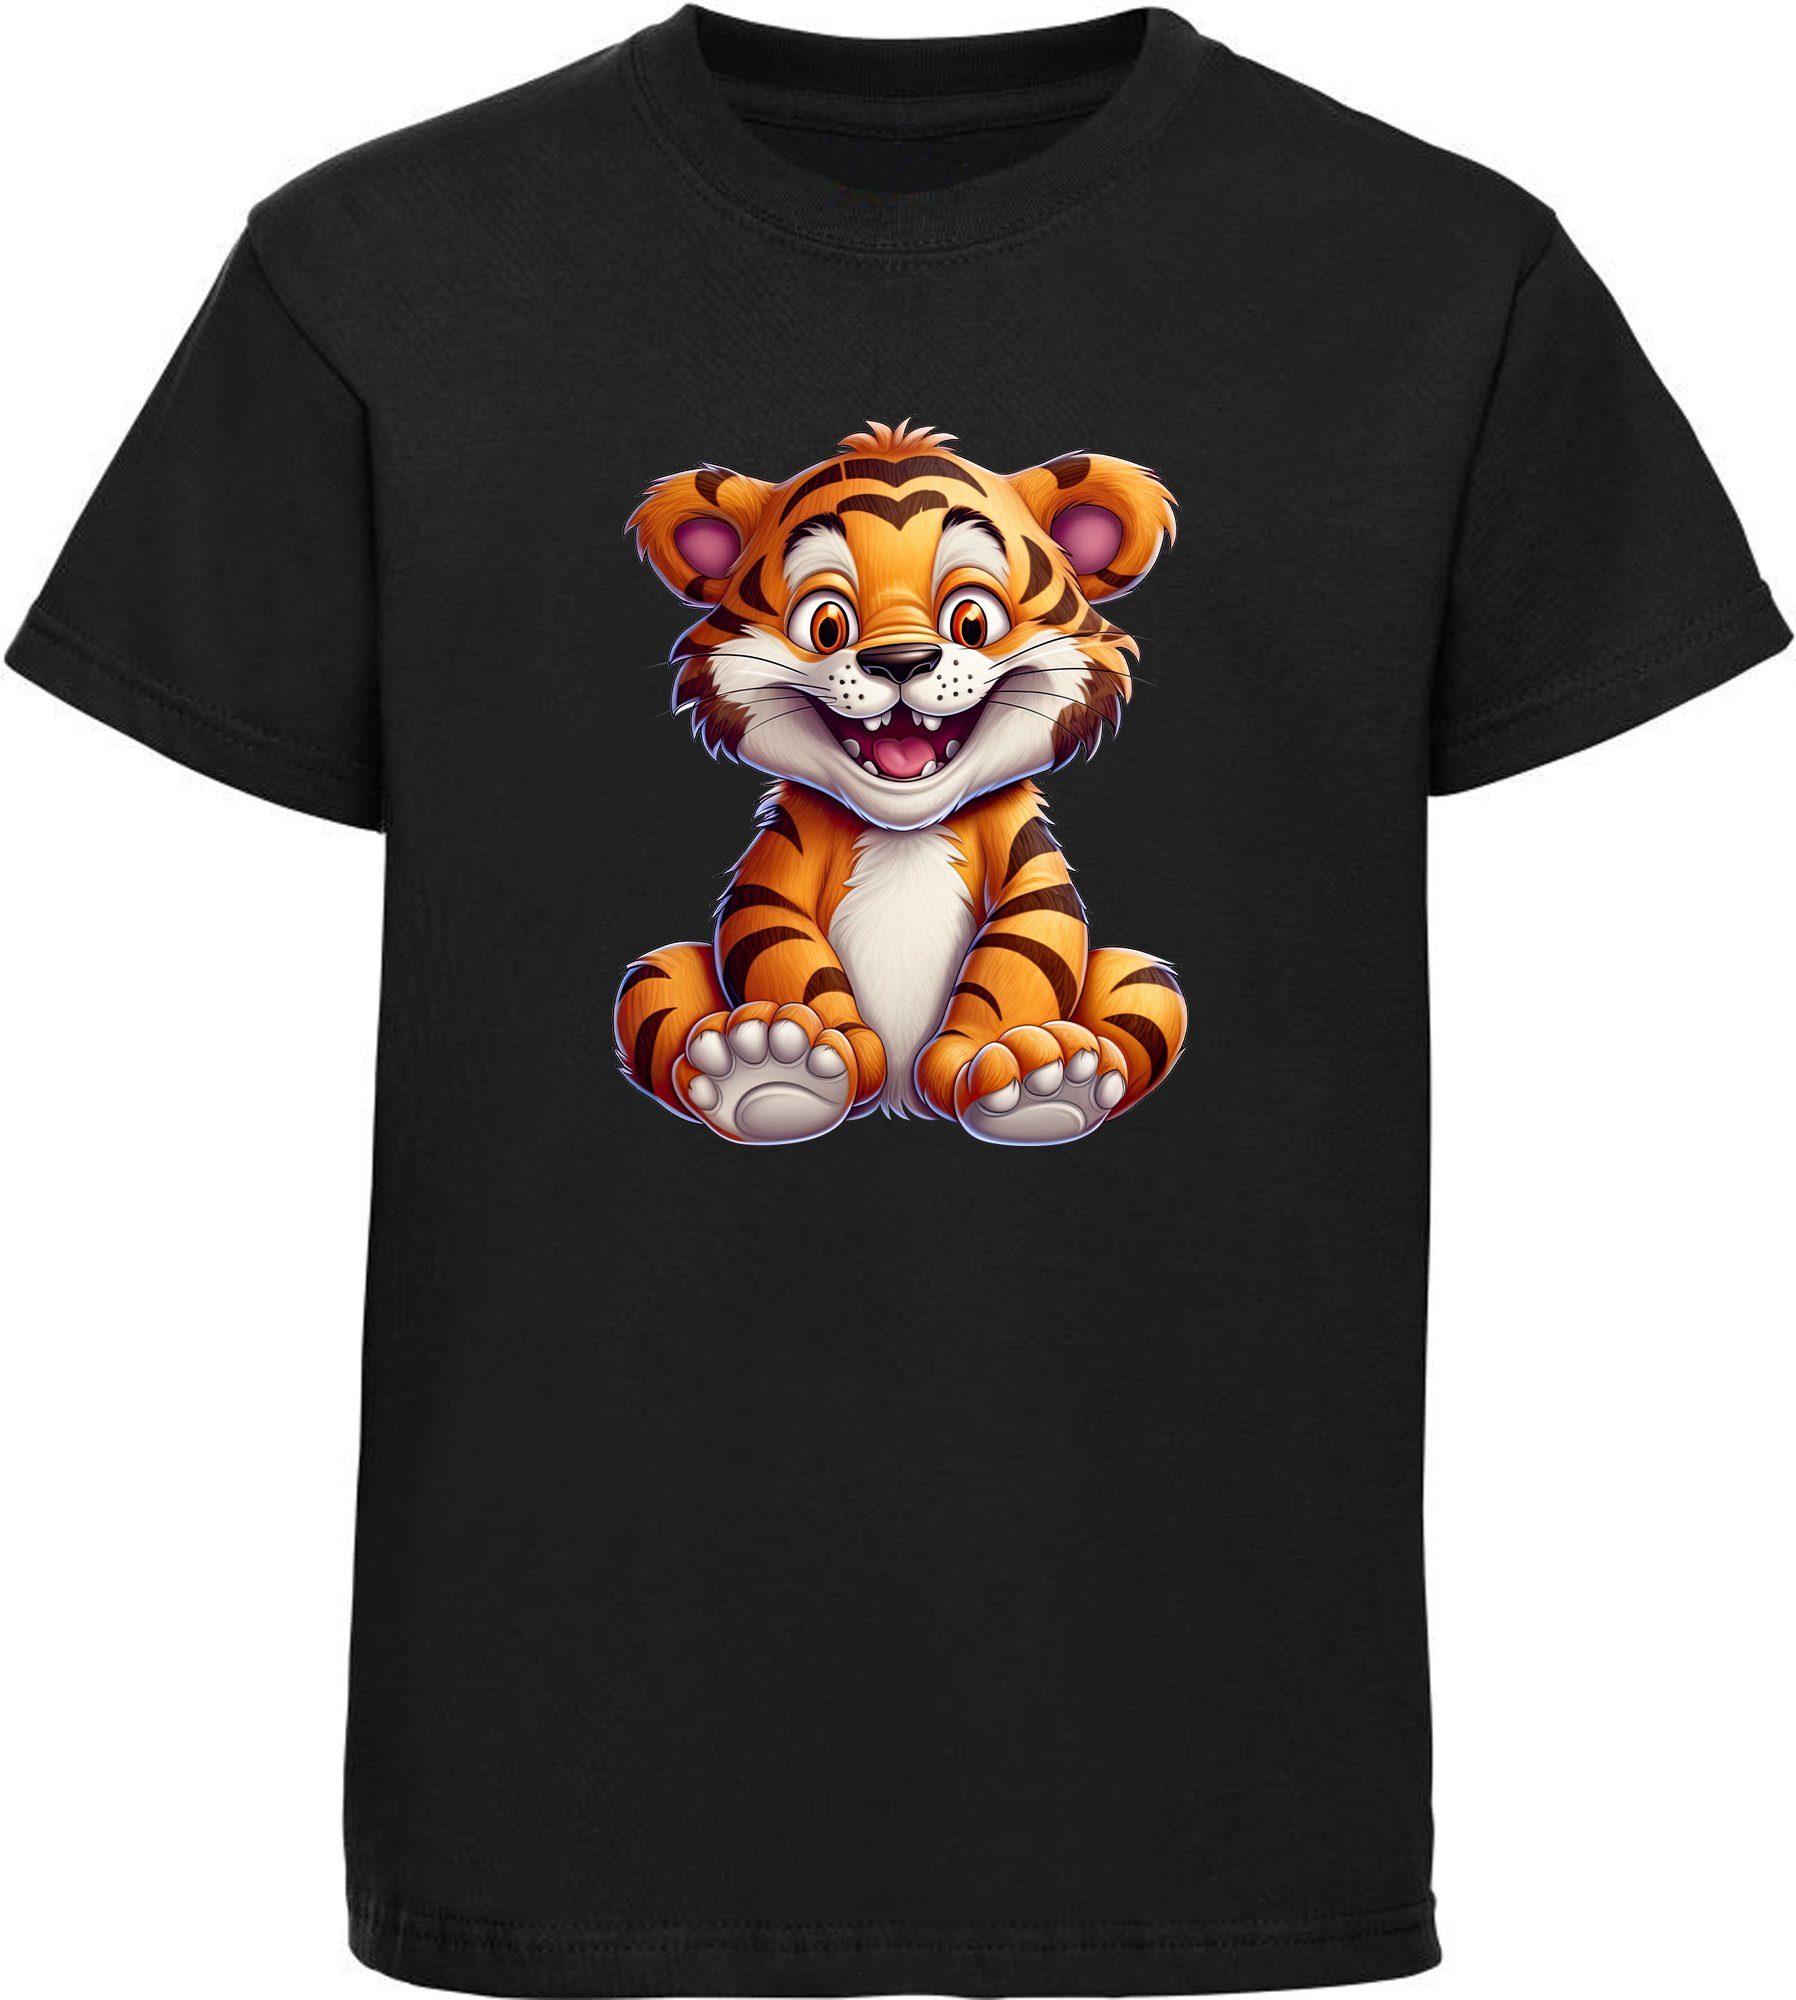 MyDesign24 T-Shirt Kinder Wildtier Print Shirt bedruckt - Baby Tiger Baumwollshirt mit Aufdruck, i278 schwarz